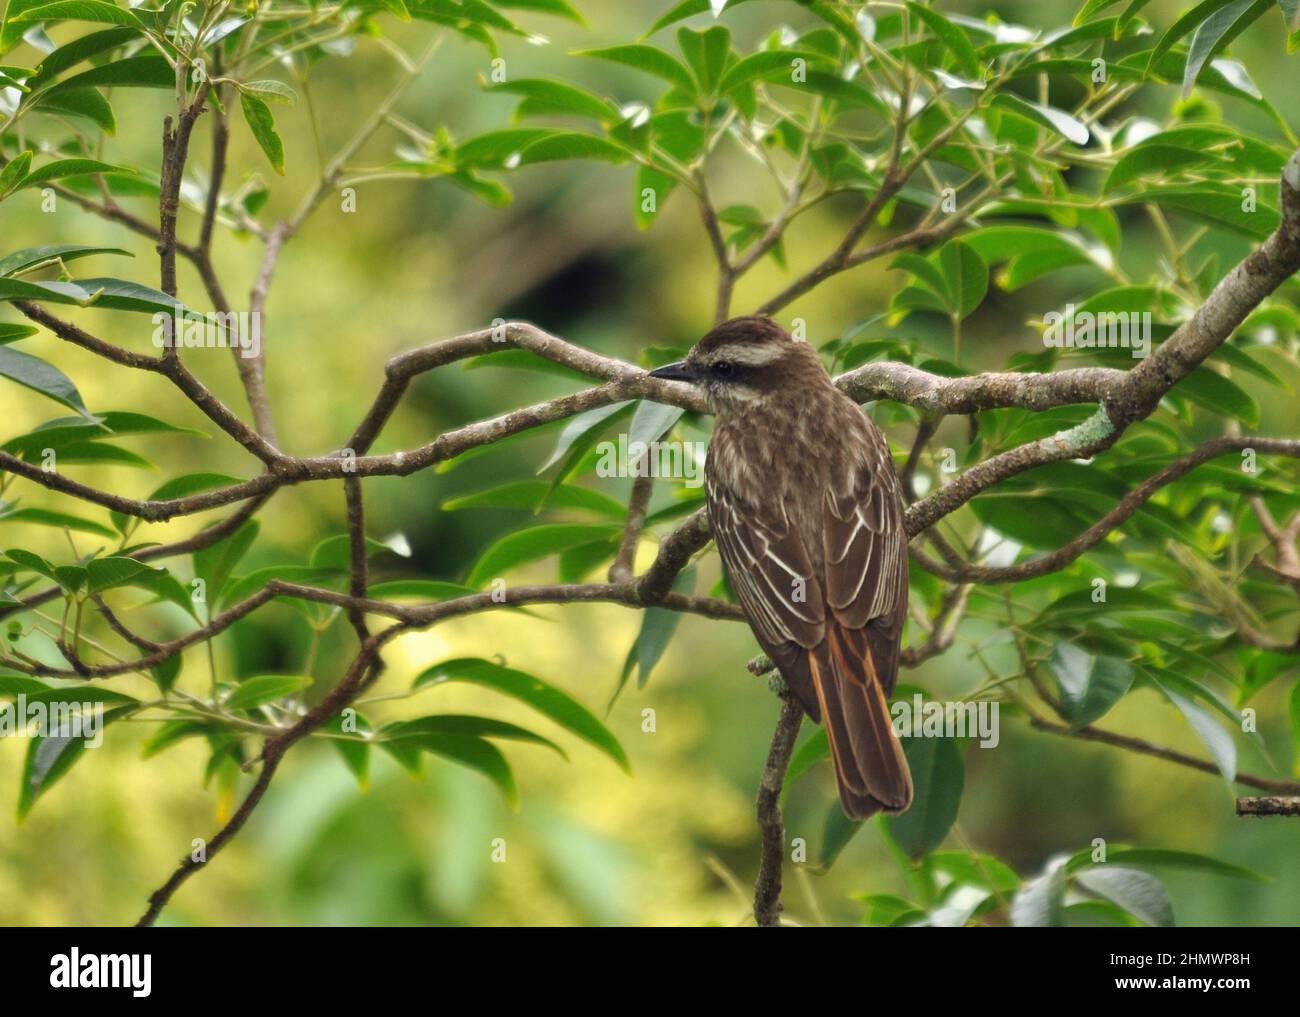 Moucherolle variégé (Empidonomus varius) perché dans un arbre sur une branche, vue de derrière. Prise aux chutes d'Iguazu, en Argentine Banque D'Images